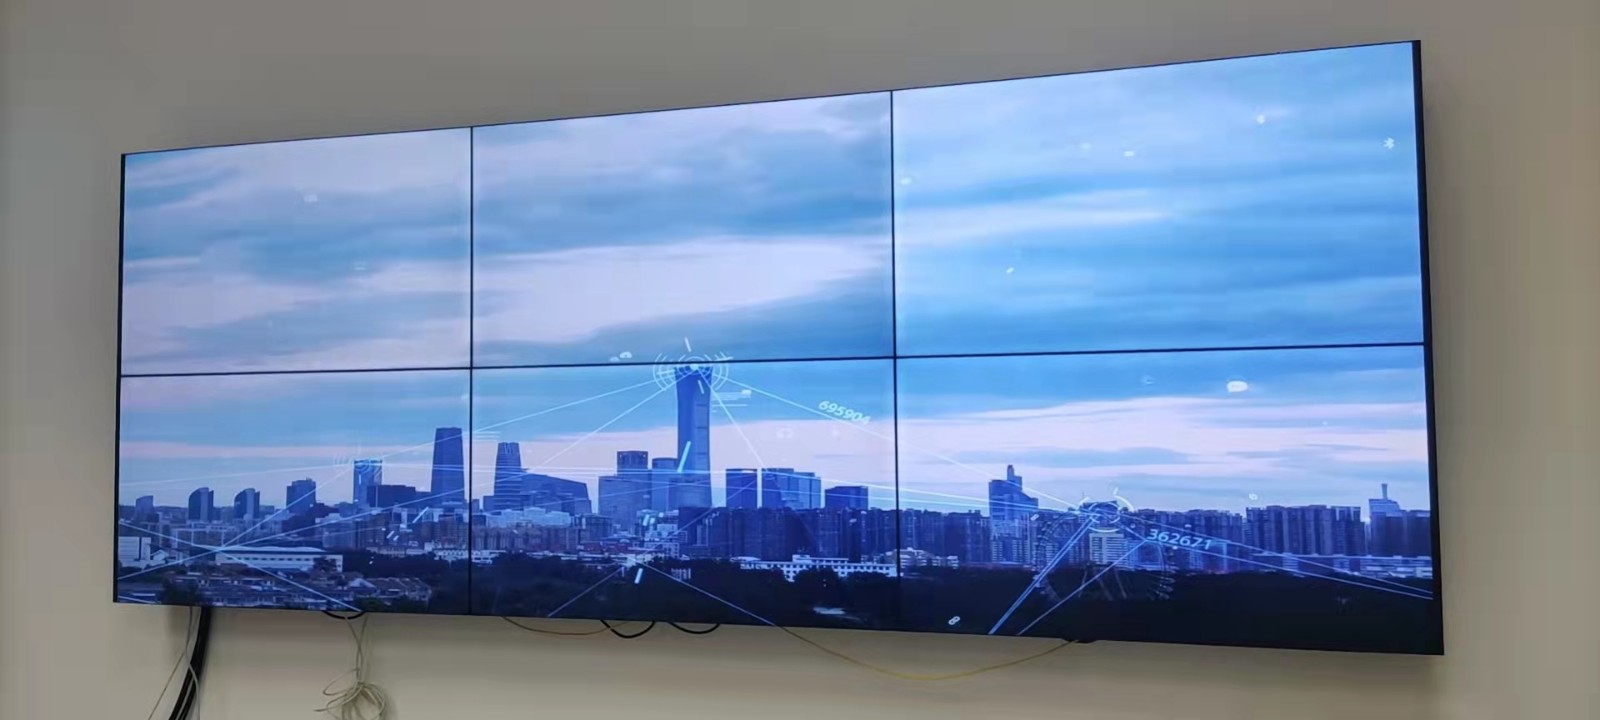 广州大学55寸3.5MM拼缝2X3壁挂液晶拼接墙展示案例图片